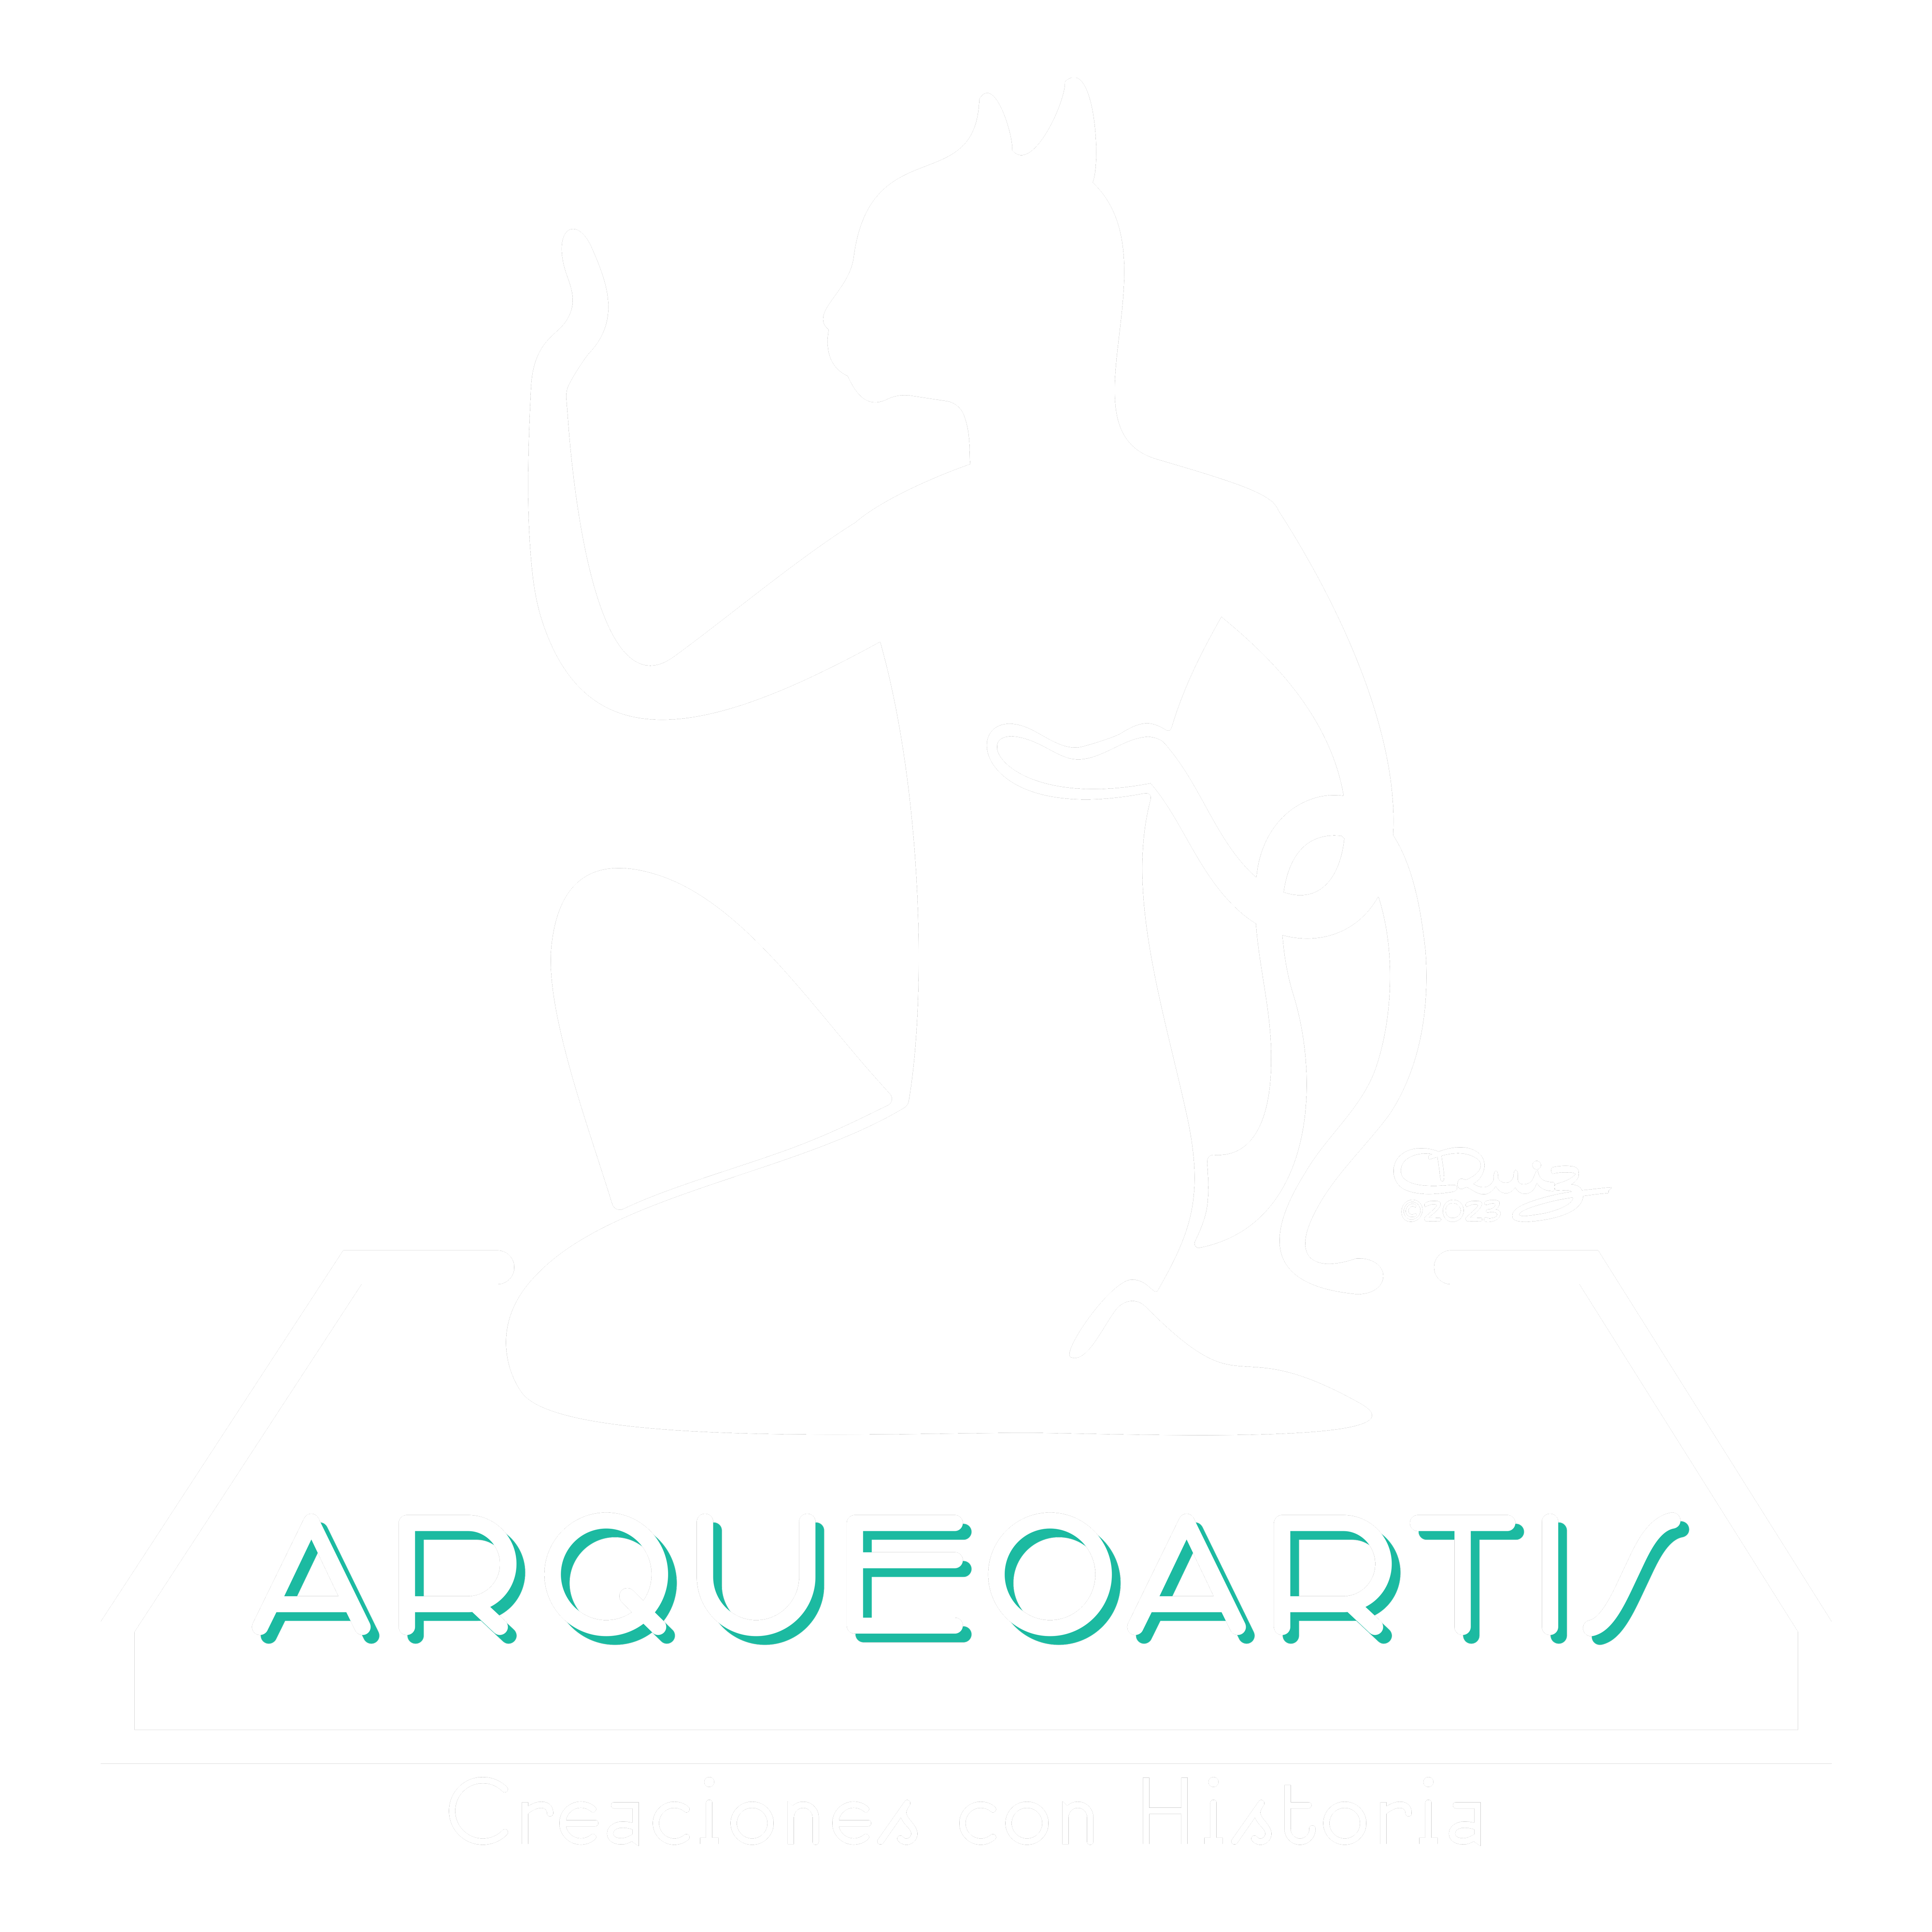 Arqueoartis - Creaciones con historia